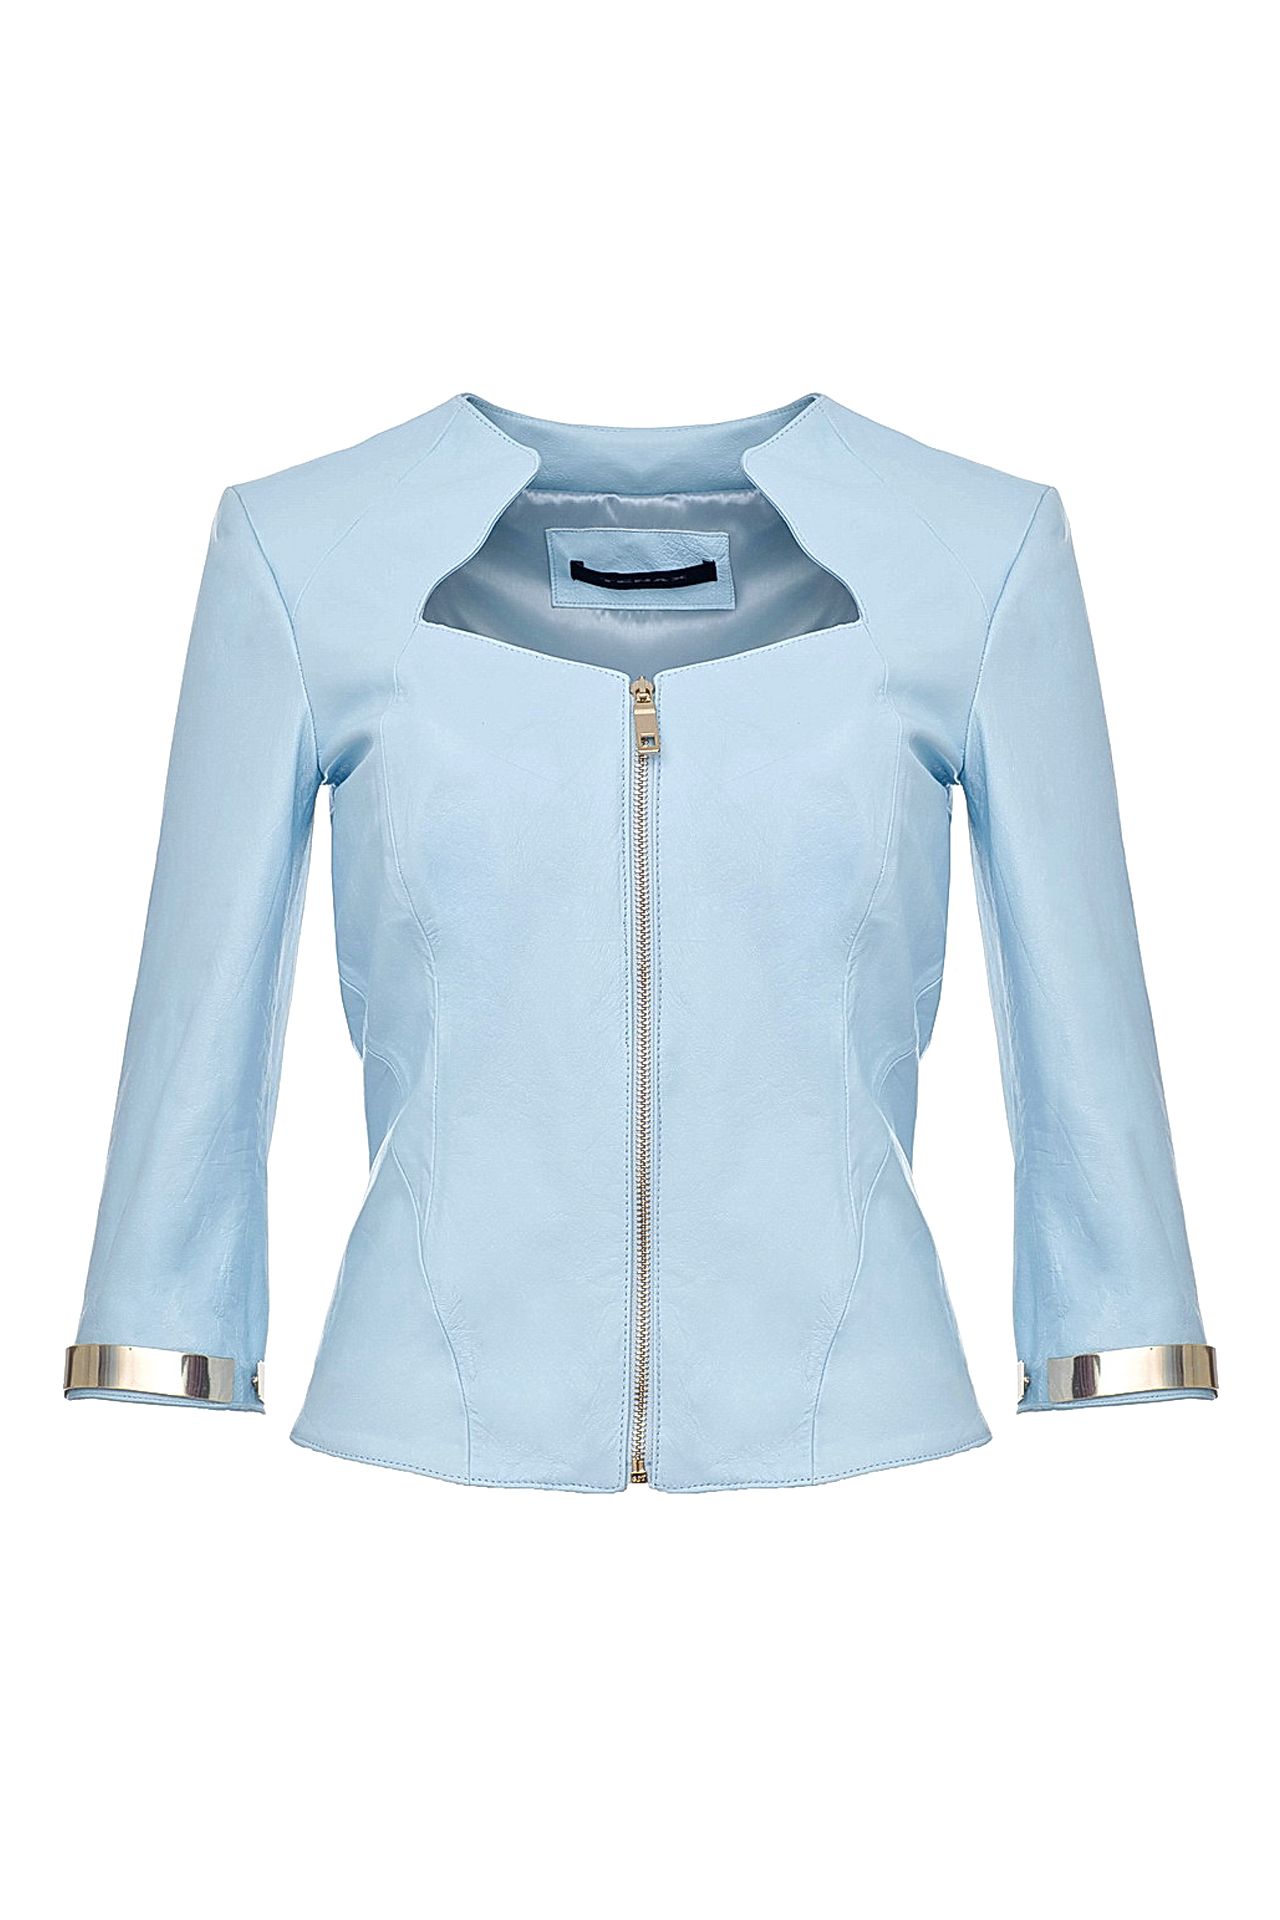 Одежда женская Куртка TENAX (7026/14.2). Купить за 20250 руб.